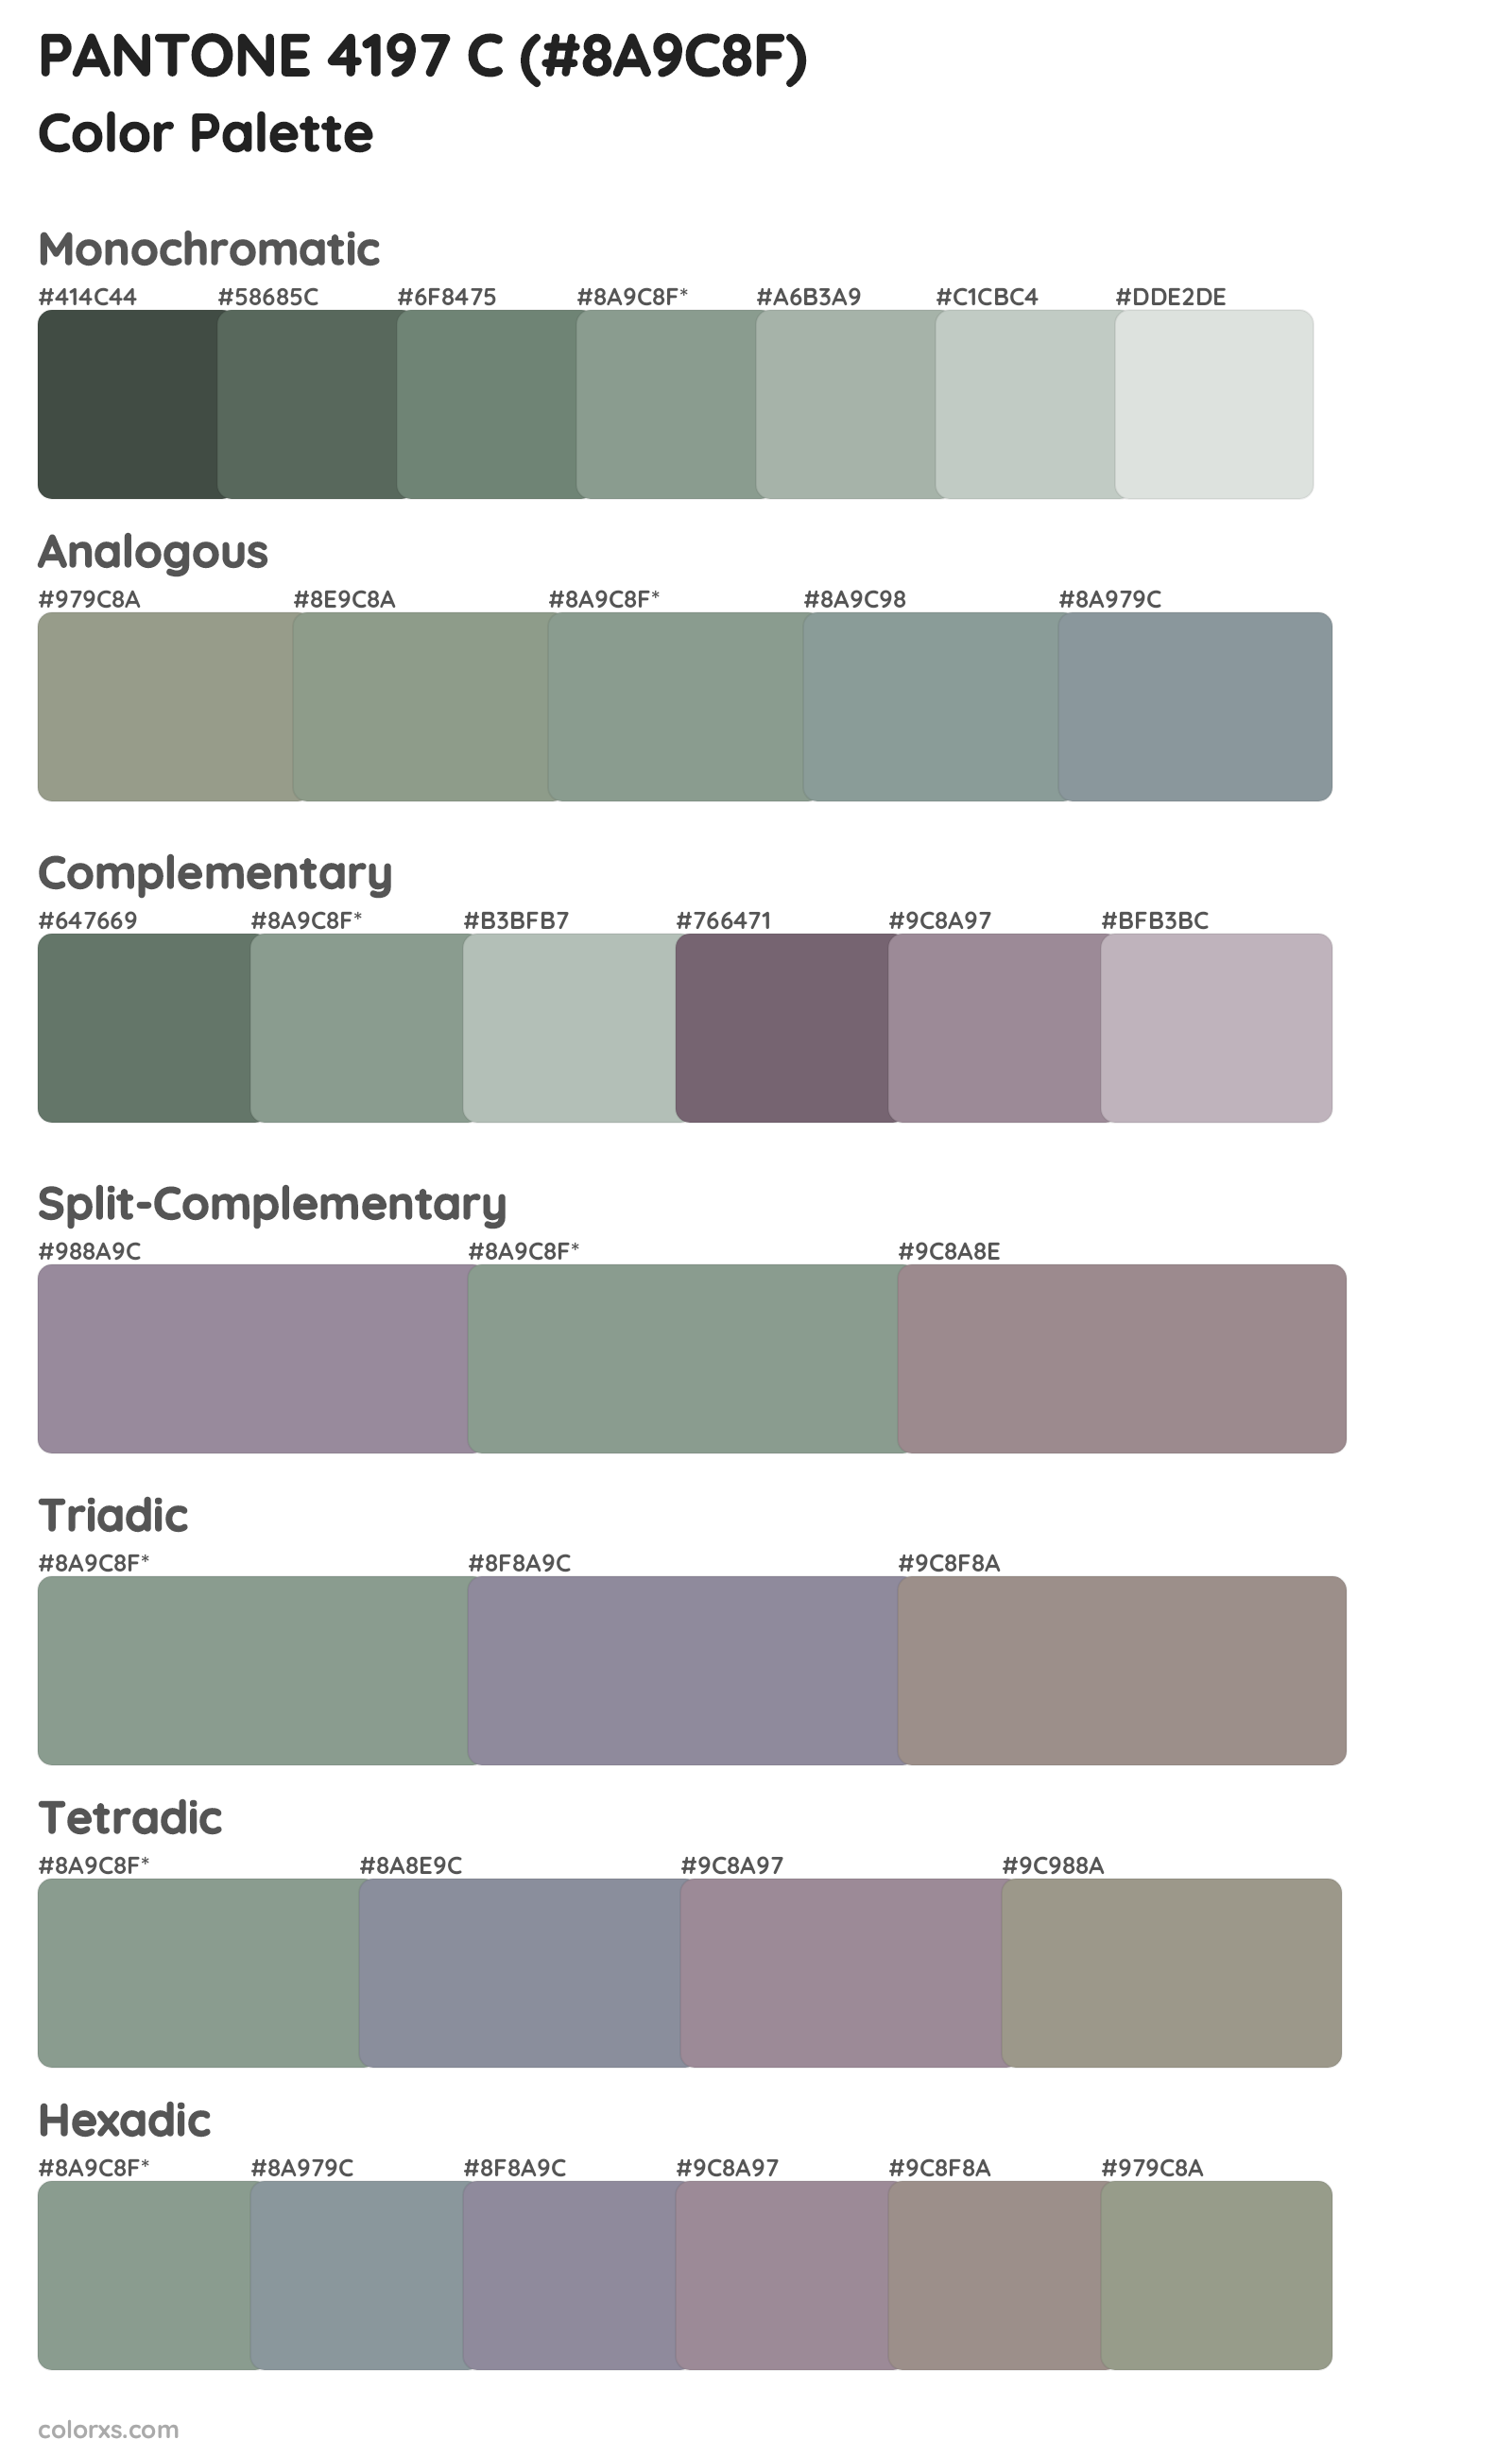 PANTONE 4197 C Color Scheme Palettes